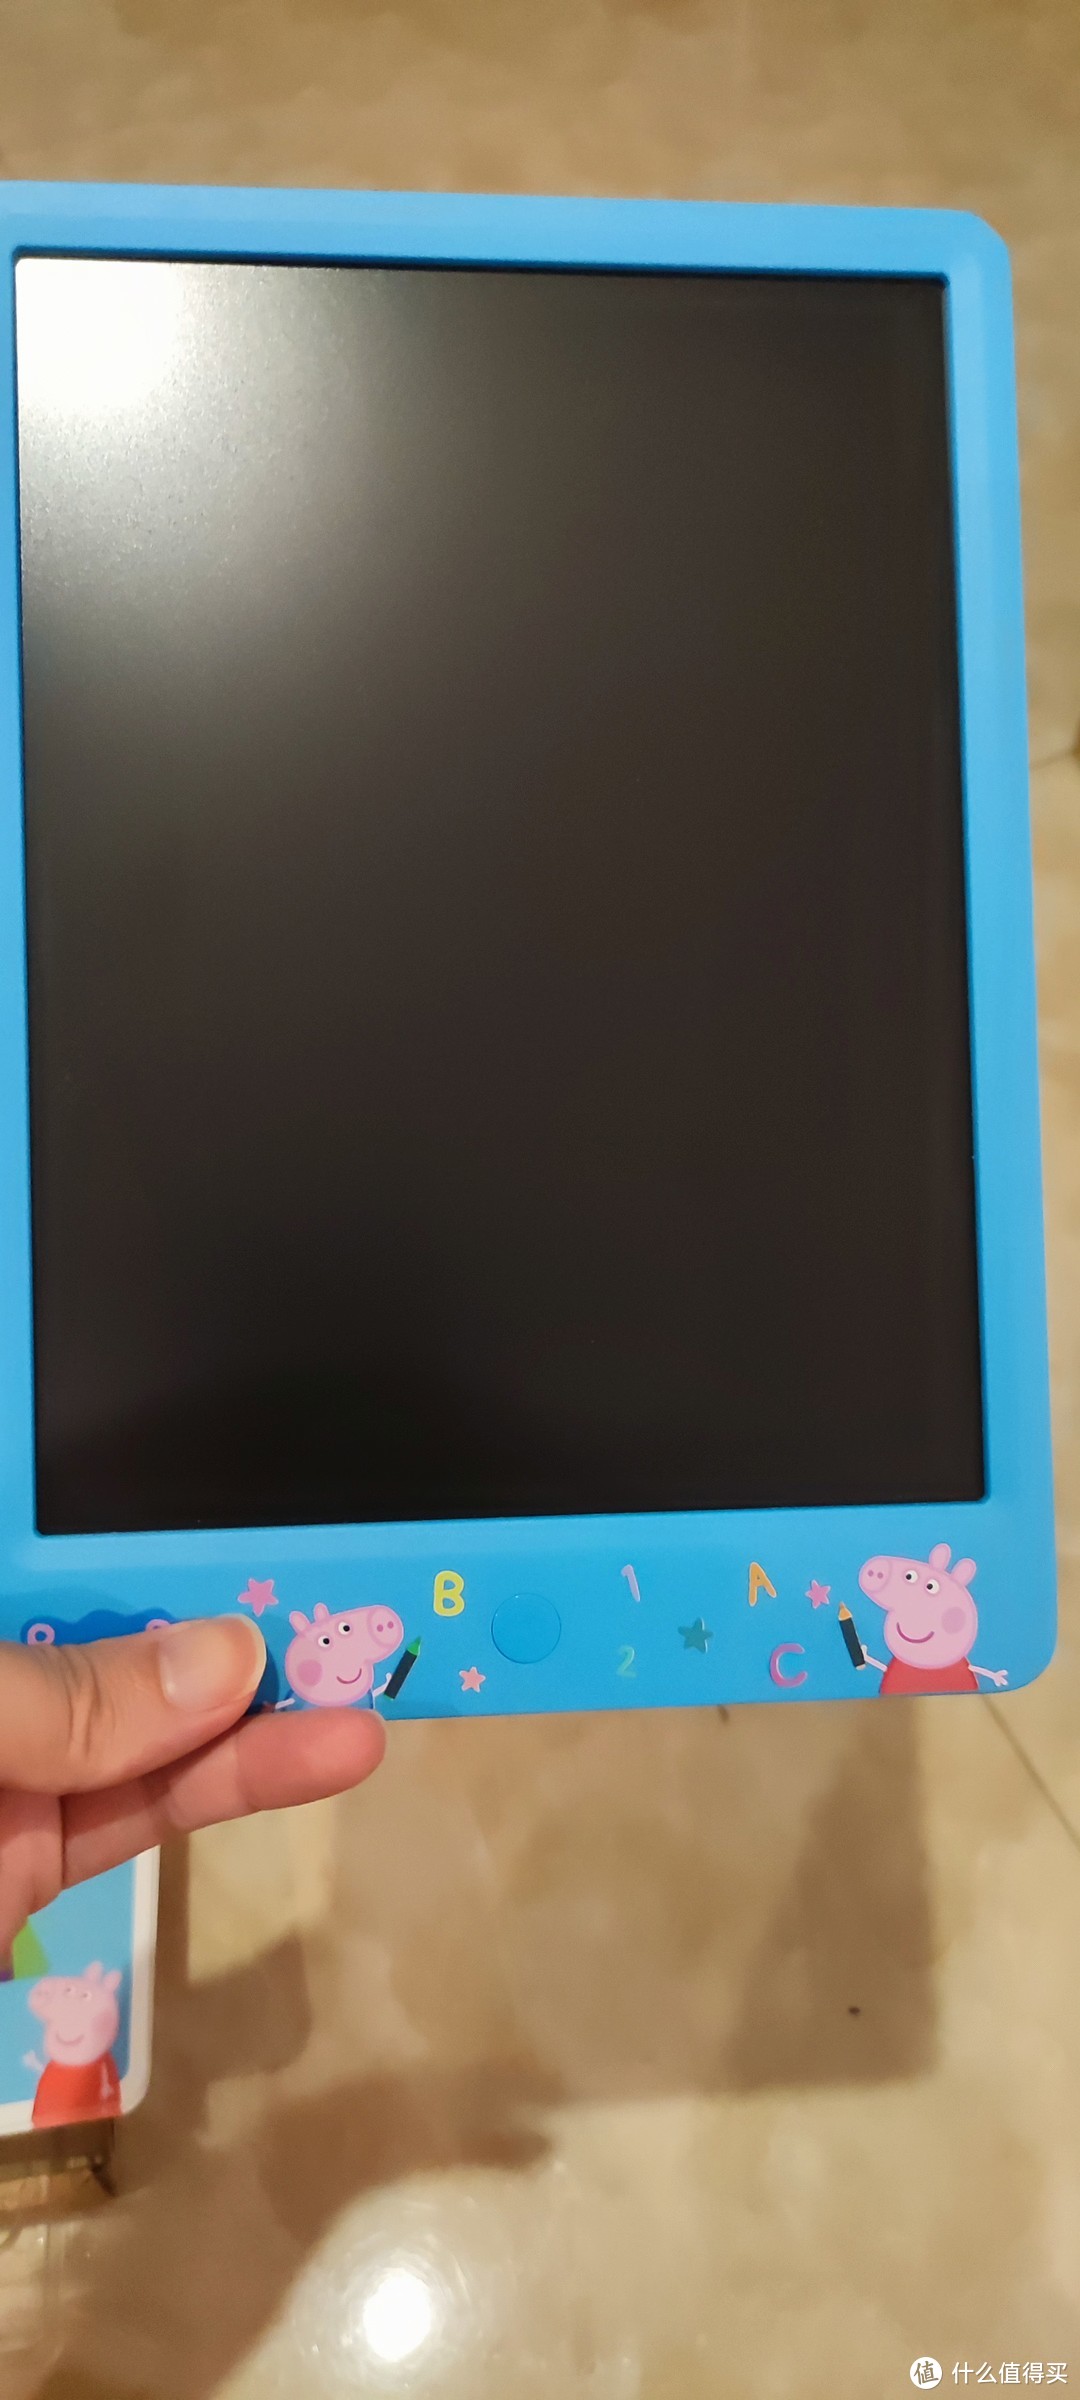 给娃一个可以画画的黑板，机器岛小猪佩奇智能黑板体验